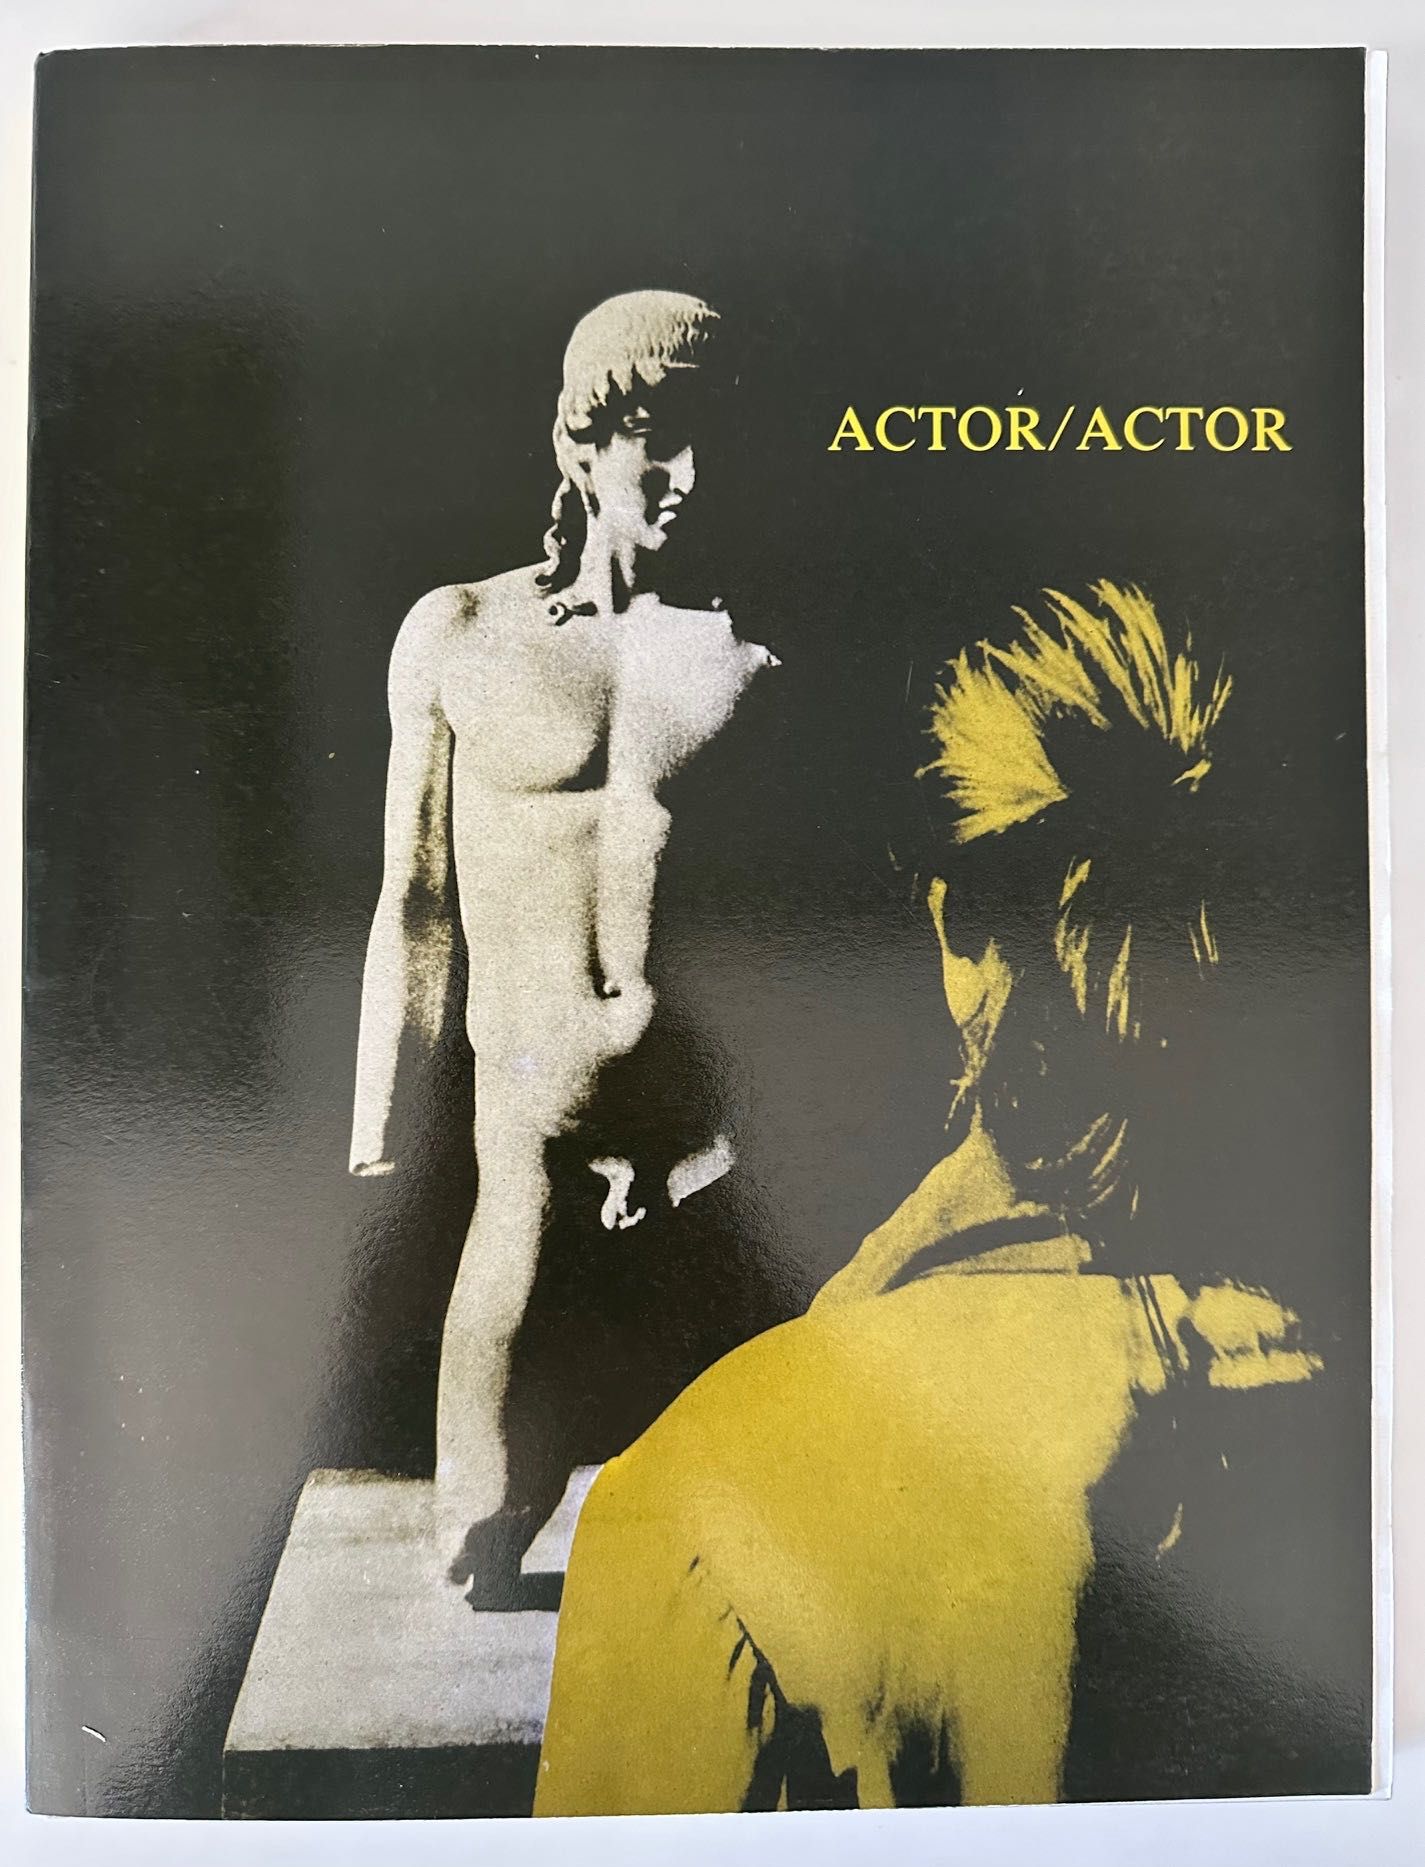 Ciclo de Cinema Actor/Actor - Fundação Calouste Gulbenkian - 1987